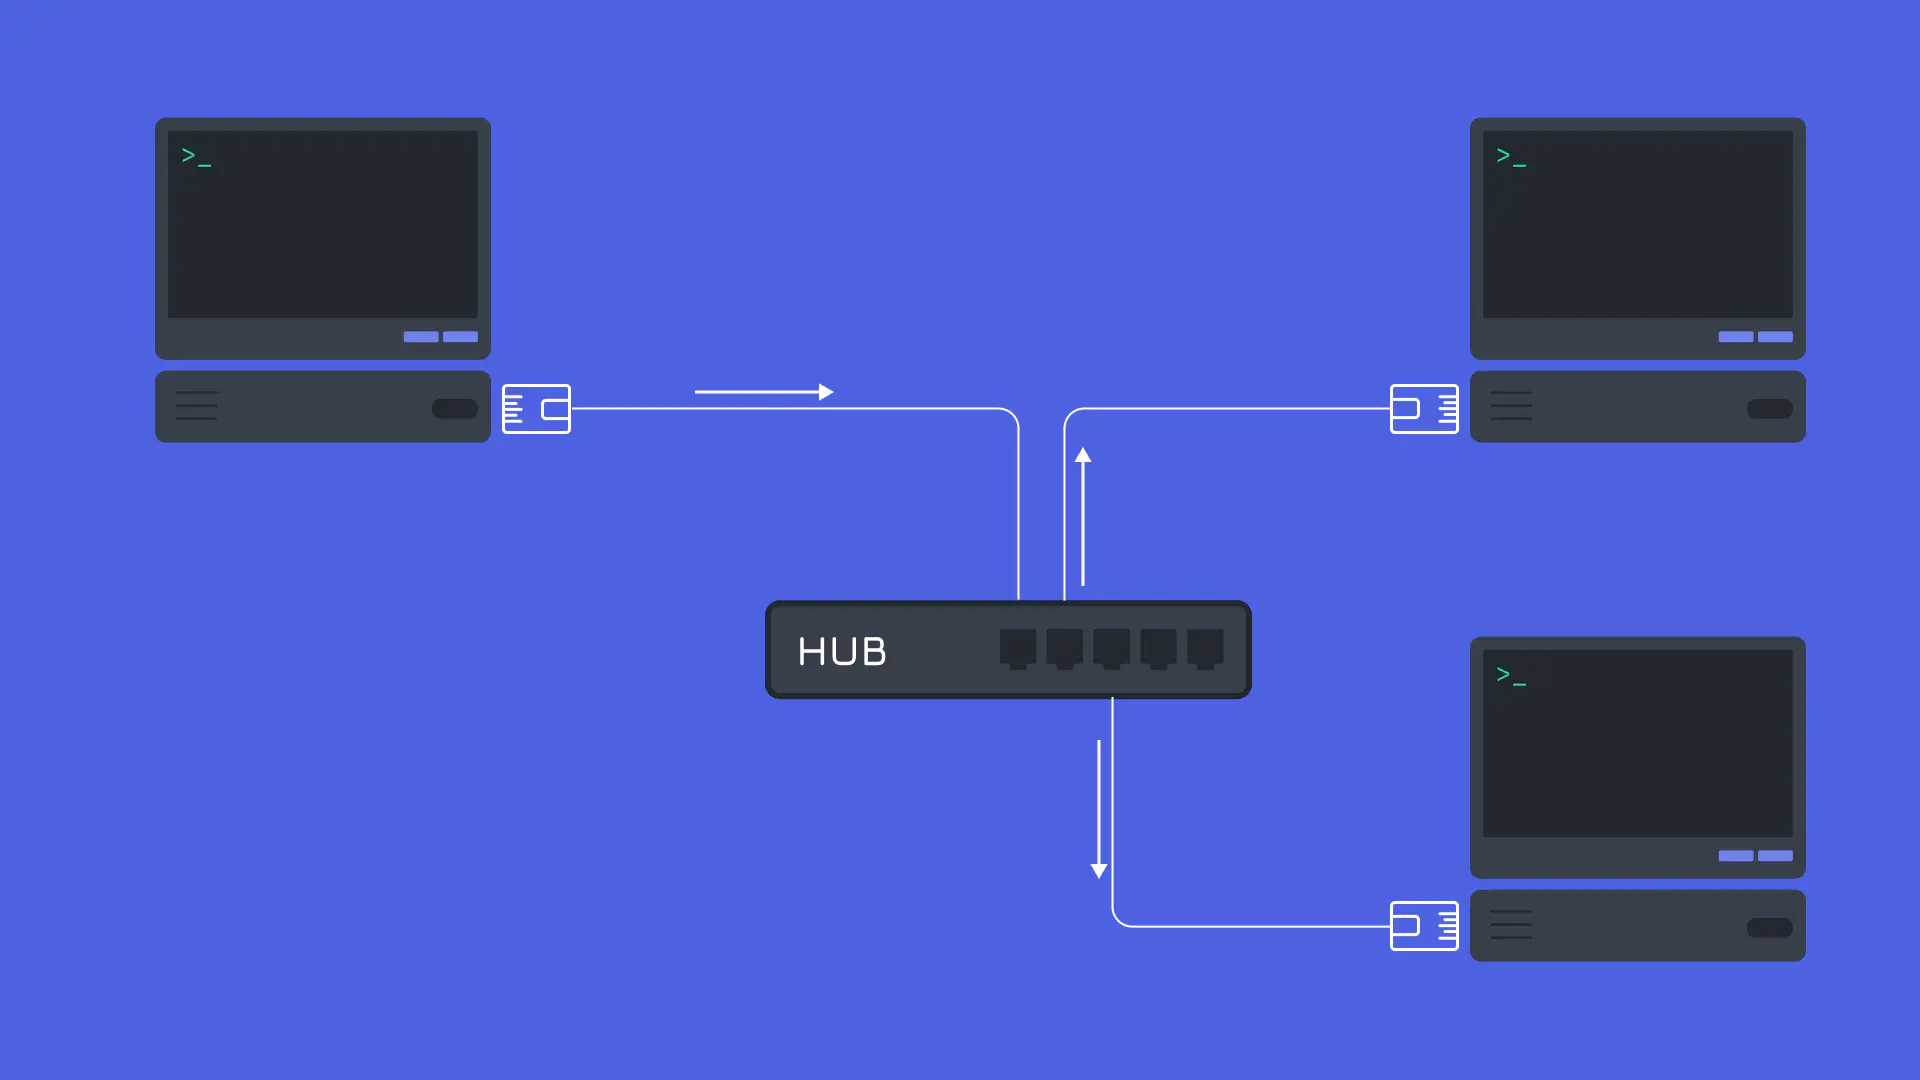 ثلاثة أجهزة متصلة عبر الشبكة باستخدام جهاز موزع Hub